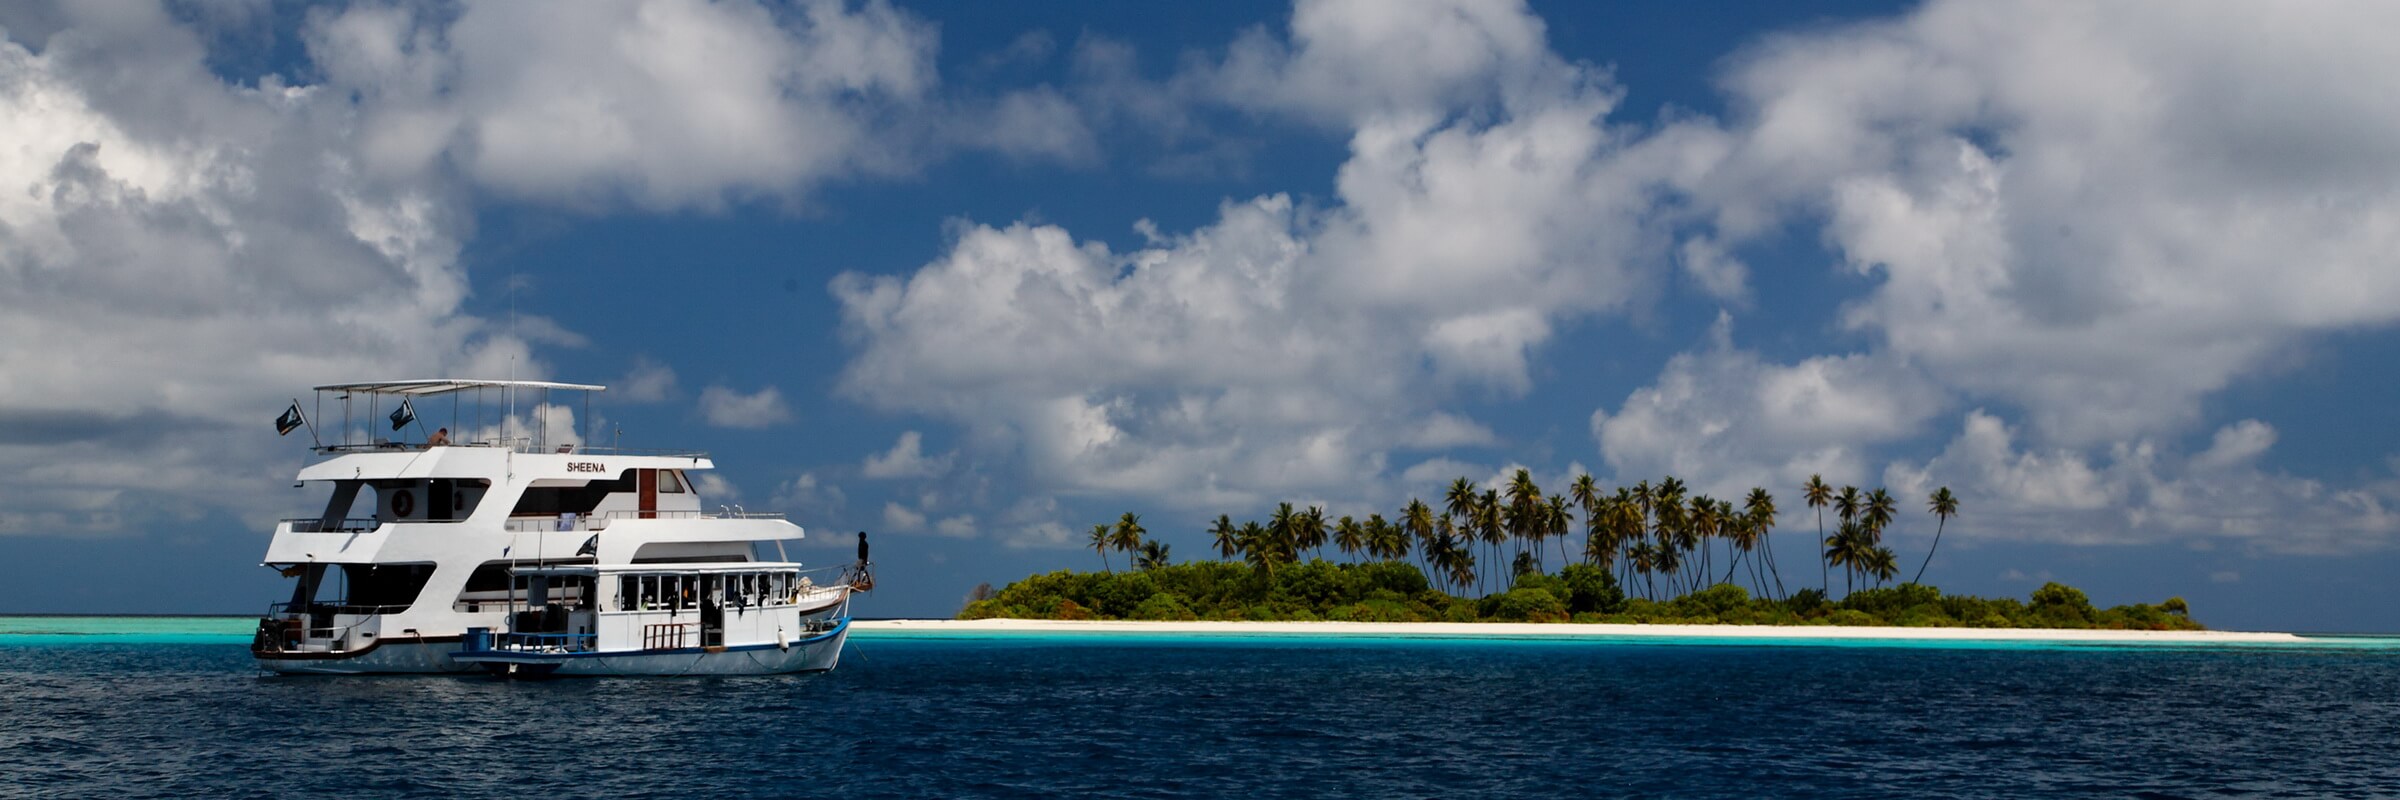 Während einer Tauchsafari auf den Malediven passiert die MY Sheena zahlreiche Trauminseln im Indischen Ozean.